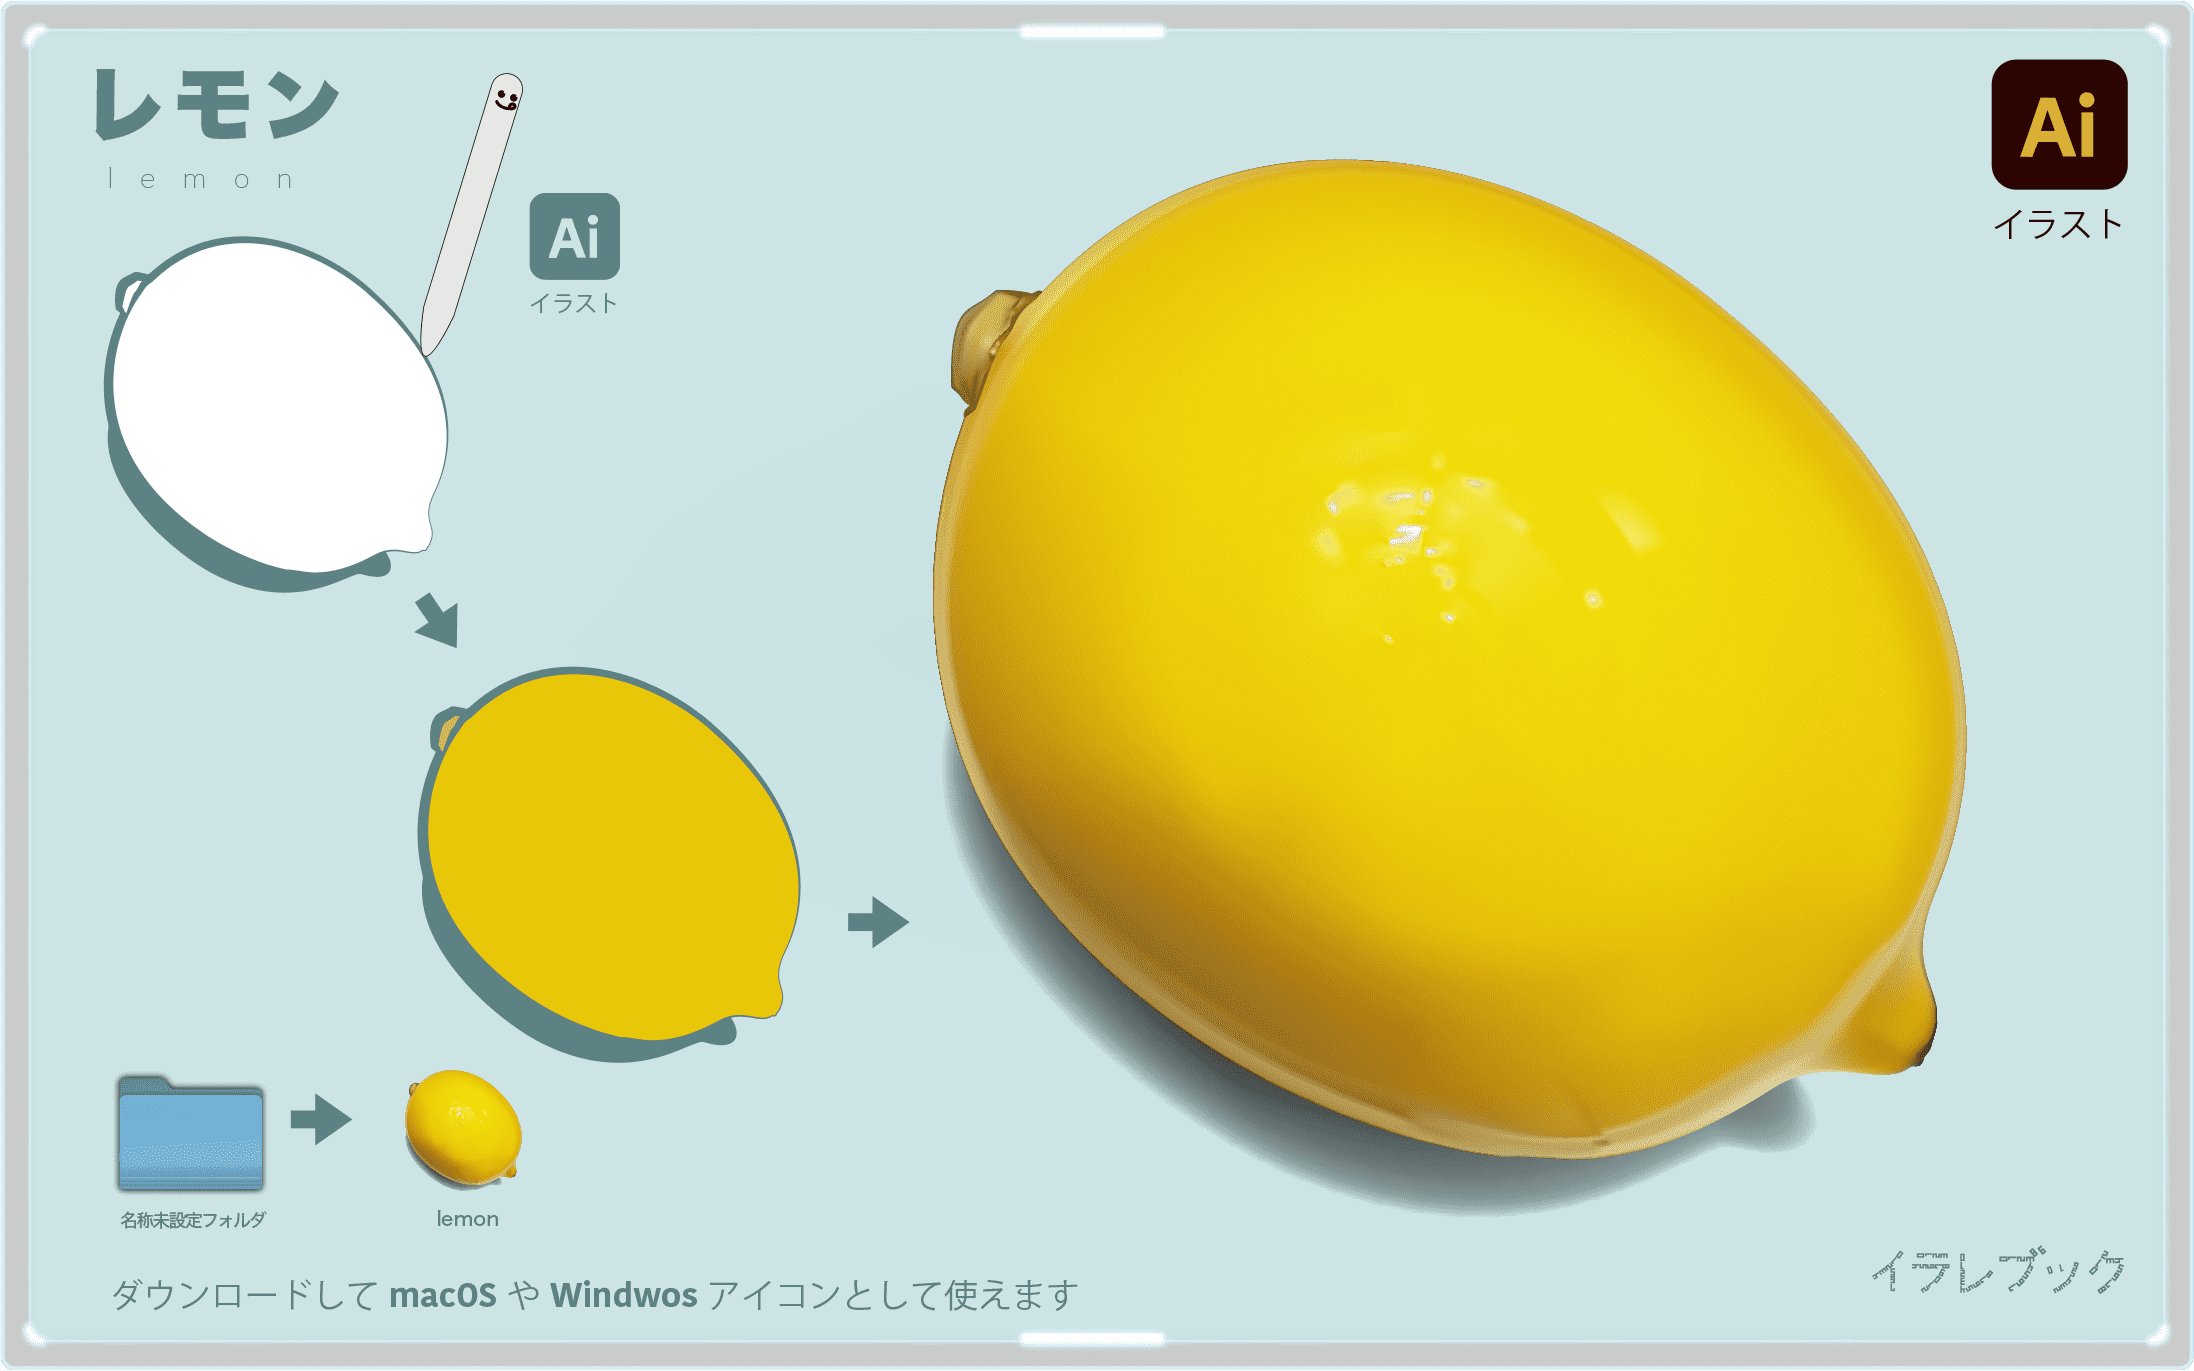 レモン イラスト ビタミンcとクエン酸のw美肌 おいしいレモンえらび レシピ Food000039